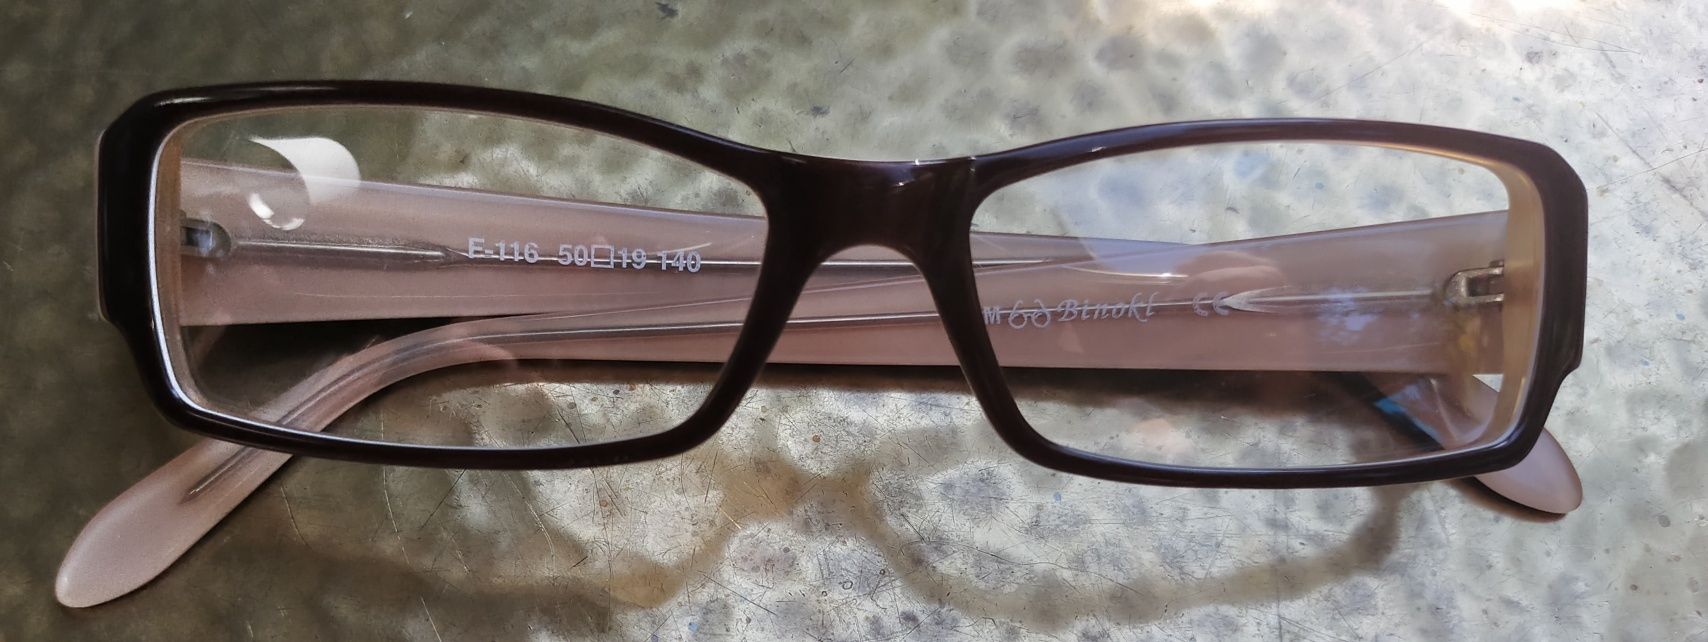 Nowe oprawki okularów od polskiego projektanta